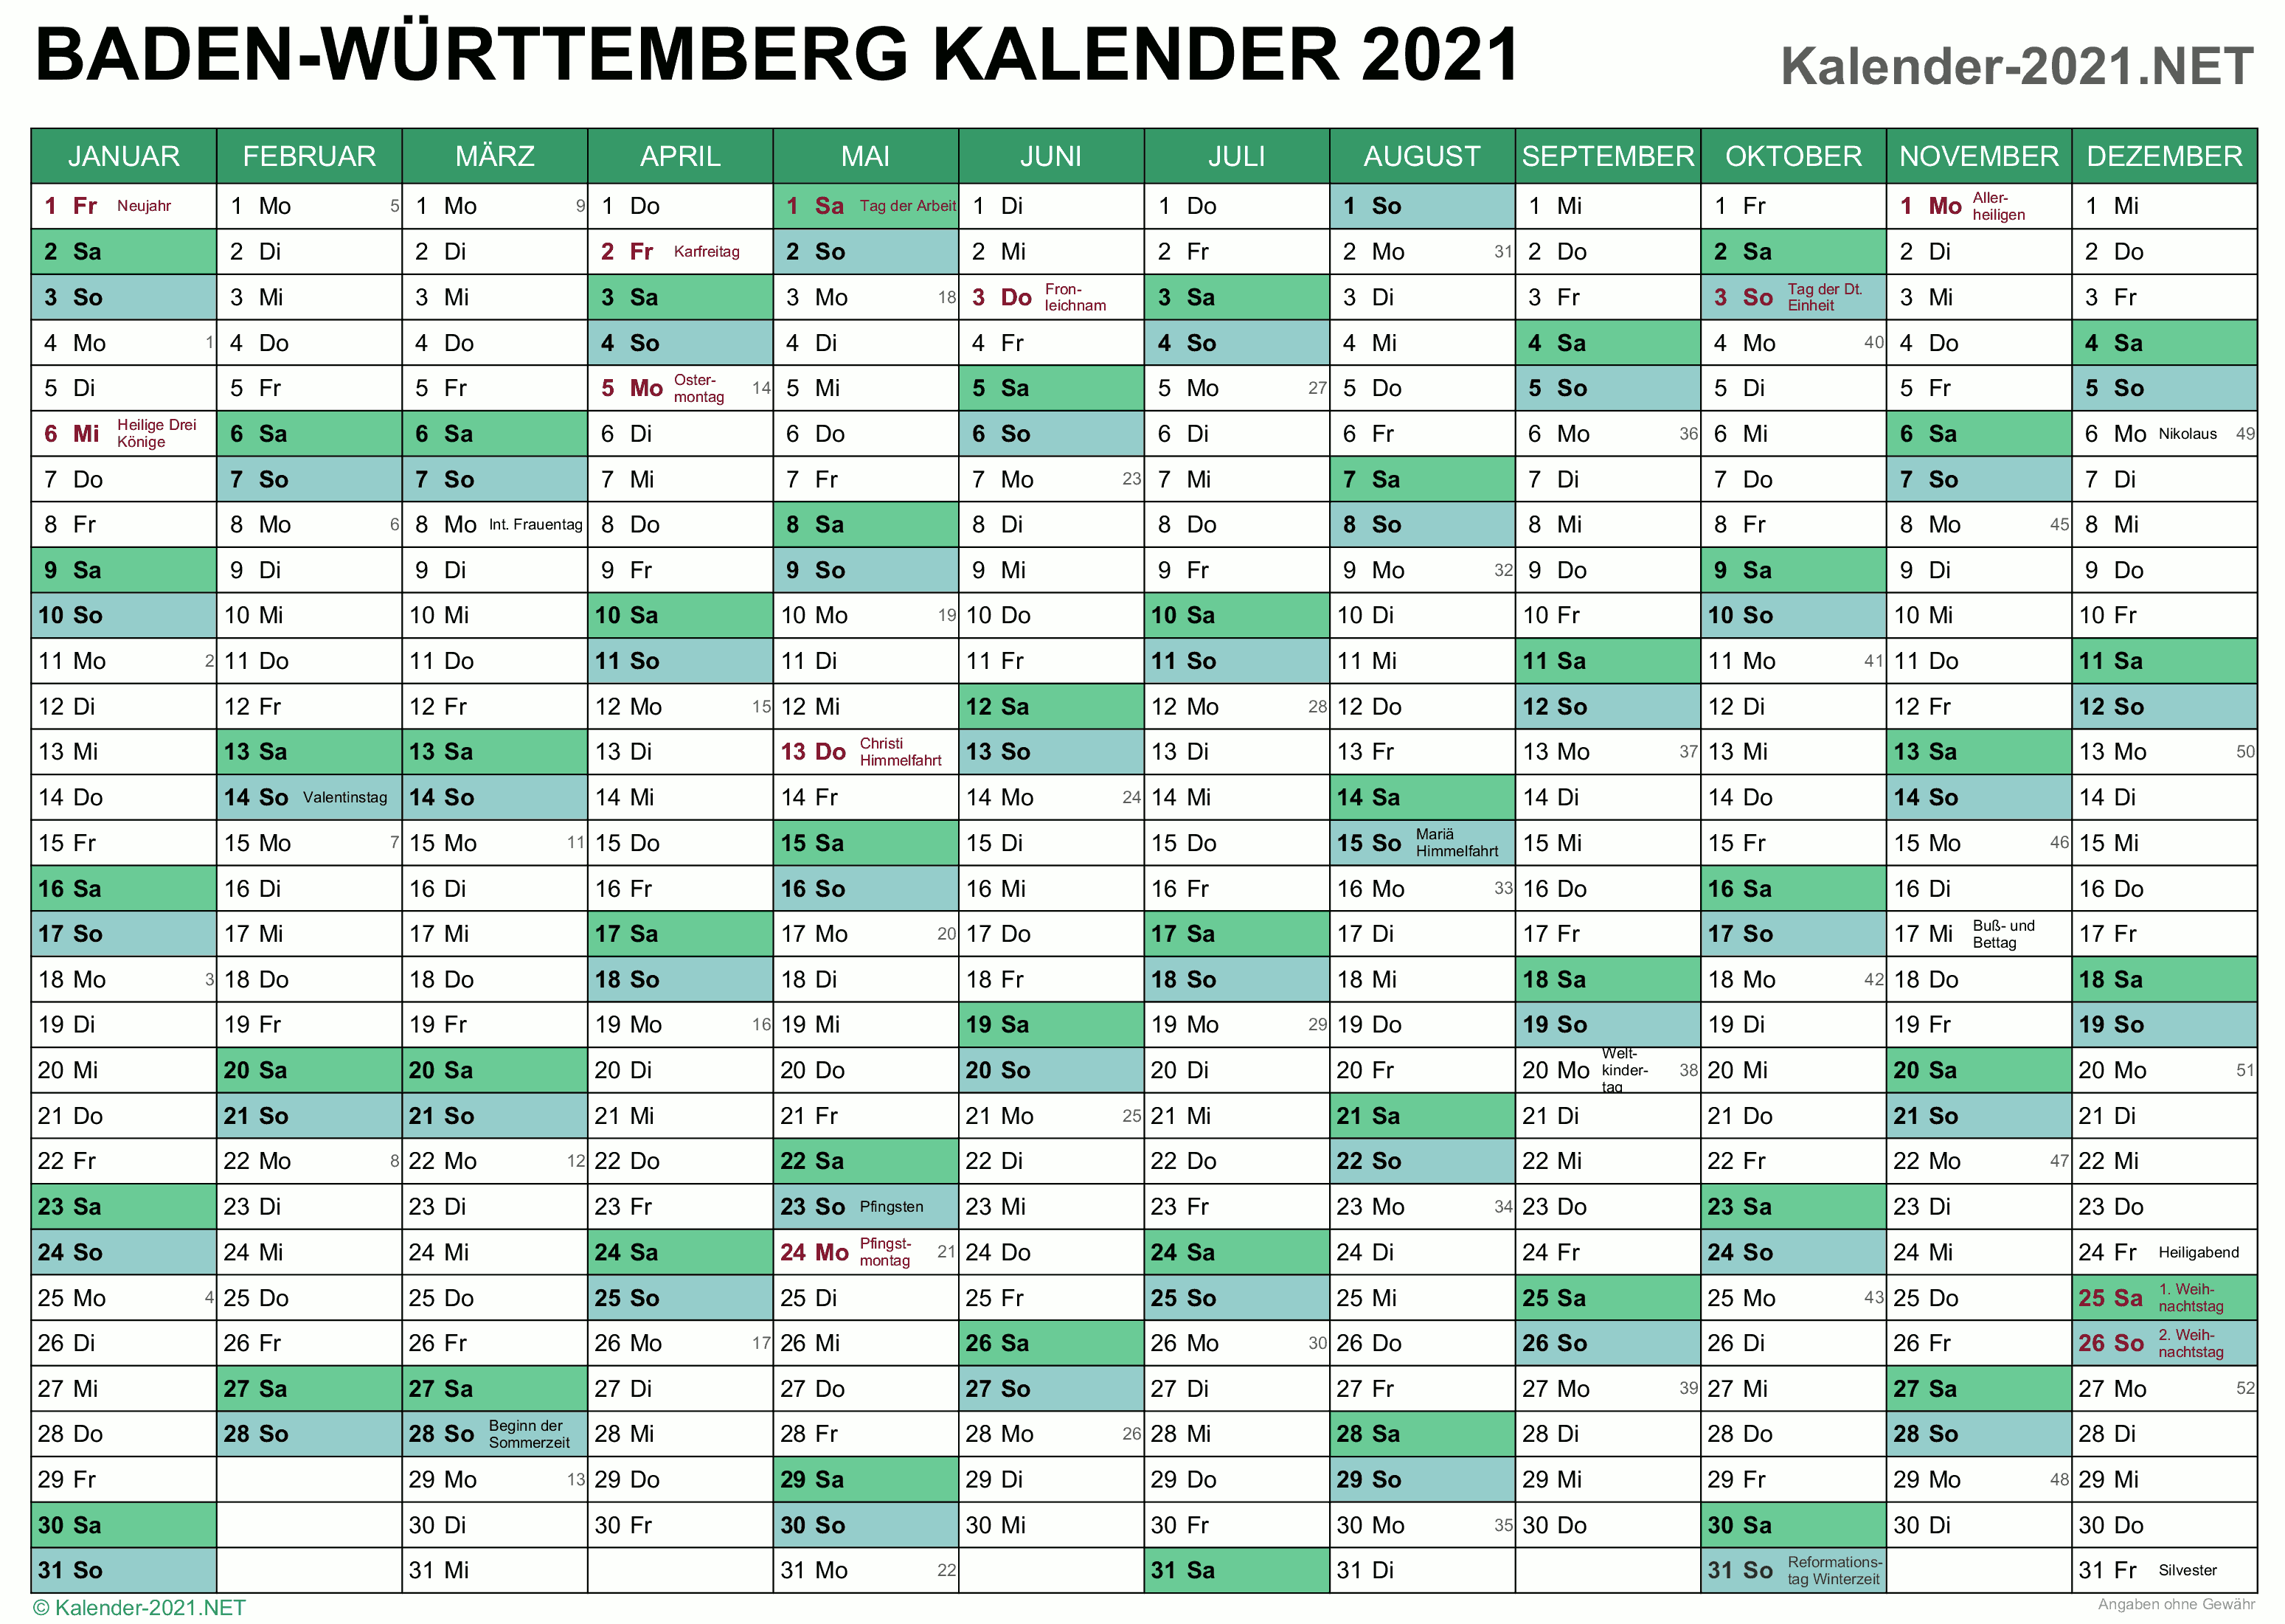 Ferien Bw 2021 : Ferien Baden Wurttemberg 2020 2021 - Den schulen stehen noch vier bewegliche ...